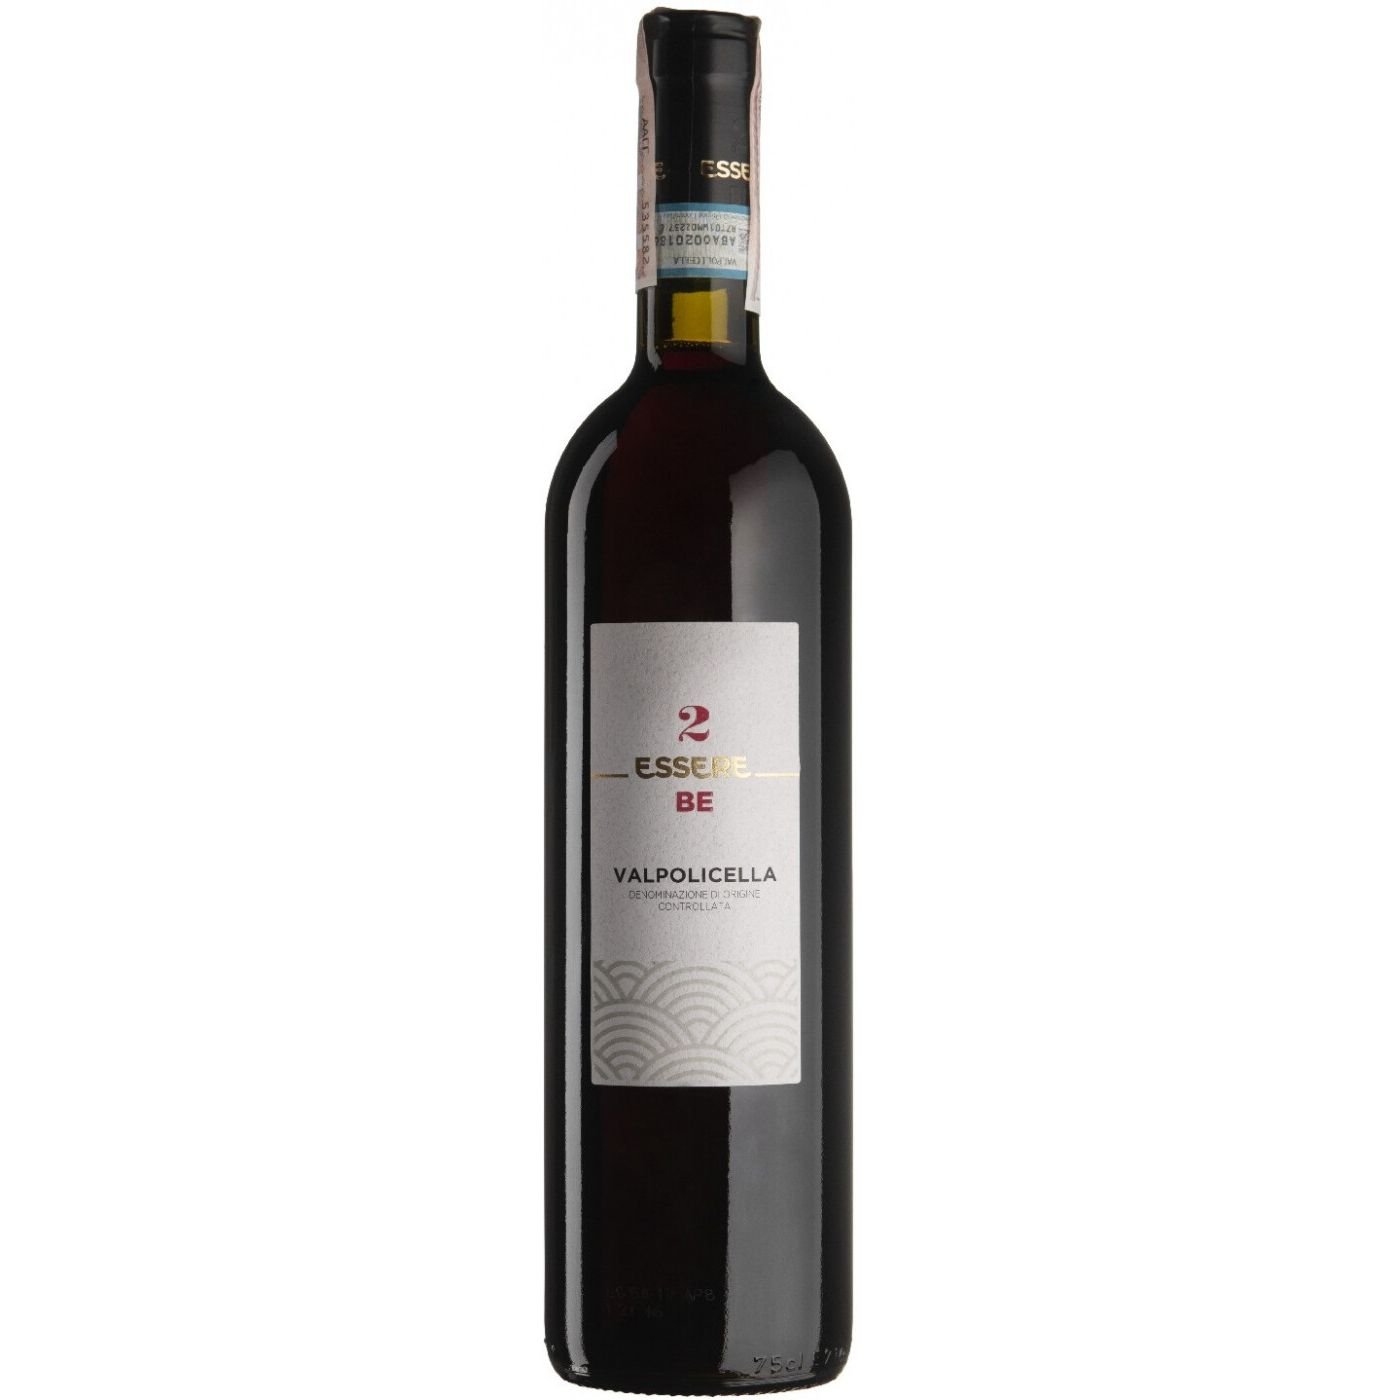 Вино Gerardo Cesari Essere 2 Be Valpolicella, 11,5%, 0,75 л - фото 1